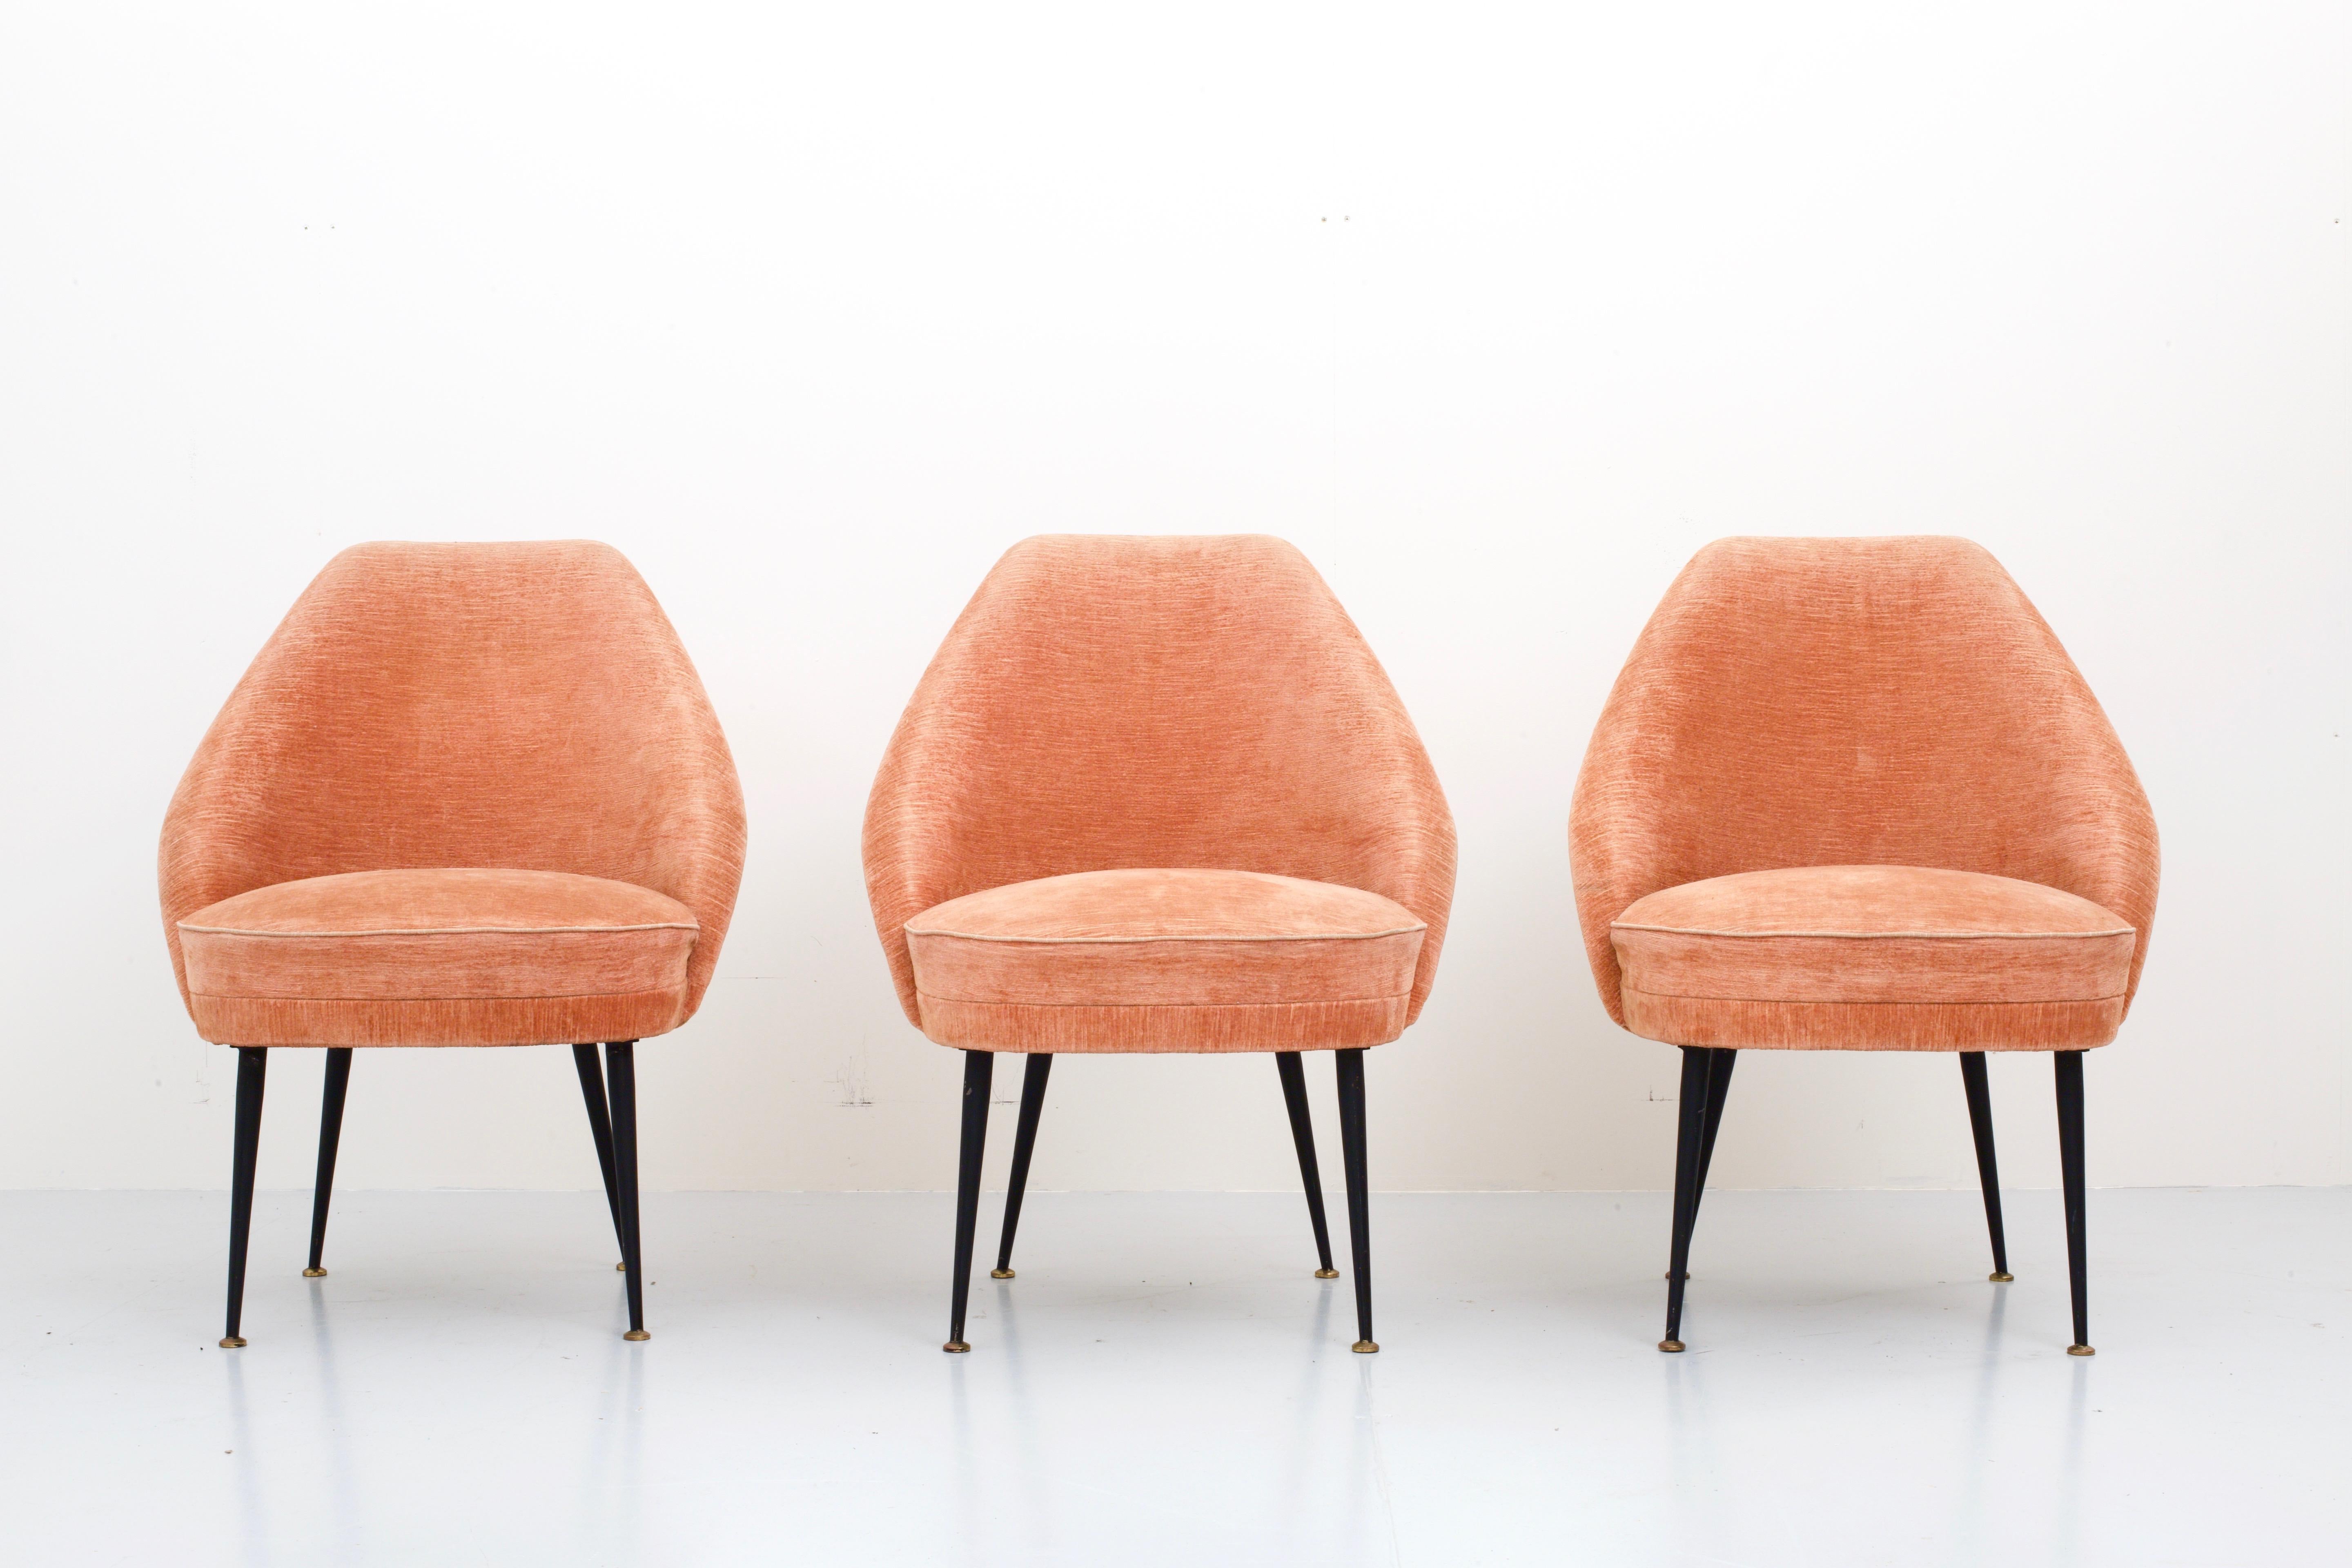 Satz von drei 'Campanula'-Sesseln aus rosa Samt von Carlo Pagano für Arflex, Italien, 1952.

Sehr bequeme und elegante niedrige Loungesessel mit schönen runden Formen in der Rückenlehne. Massive Beine aus Metall und Messing verleihen ihnen ein